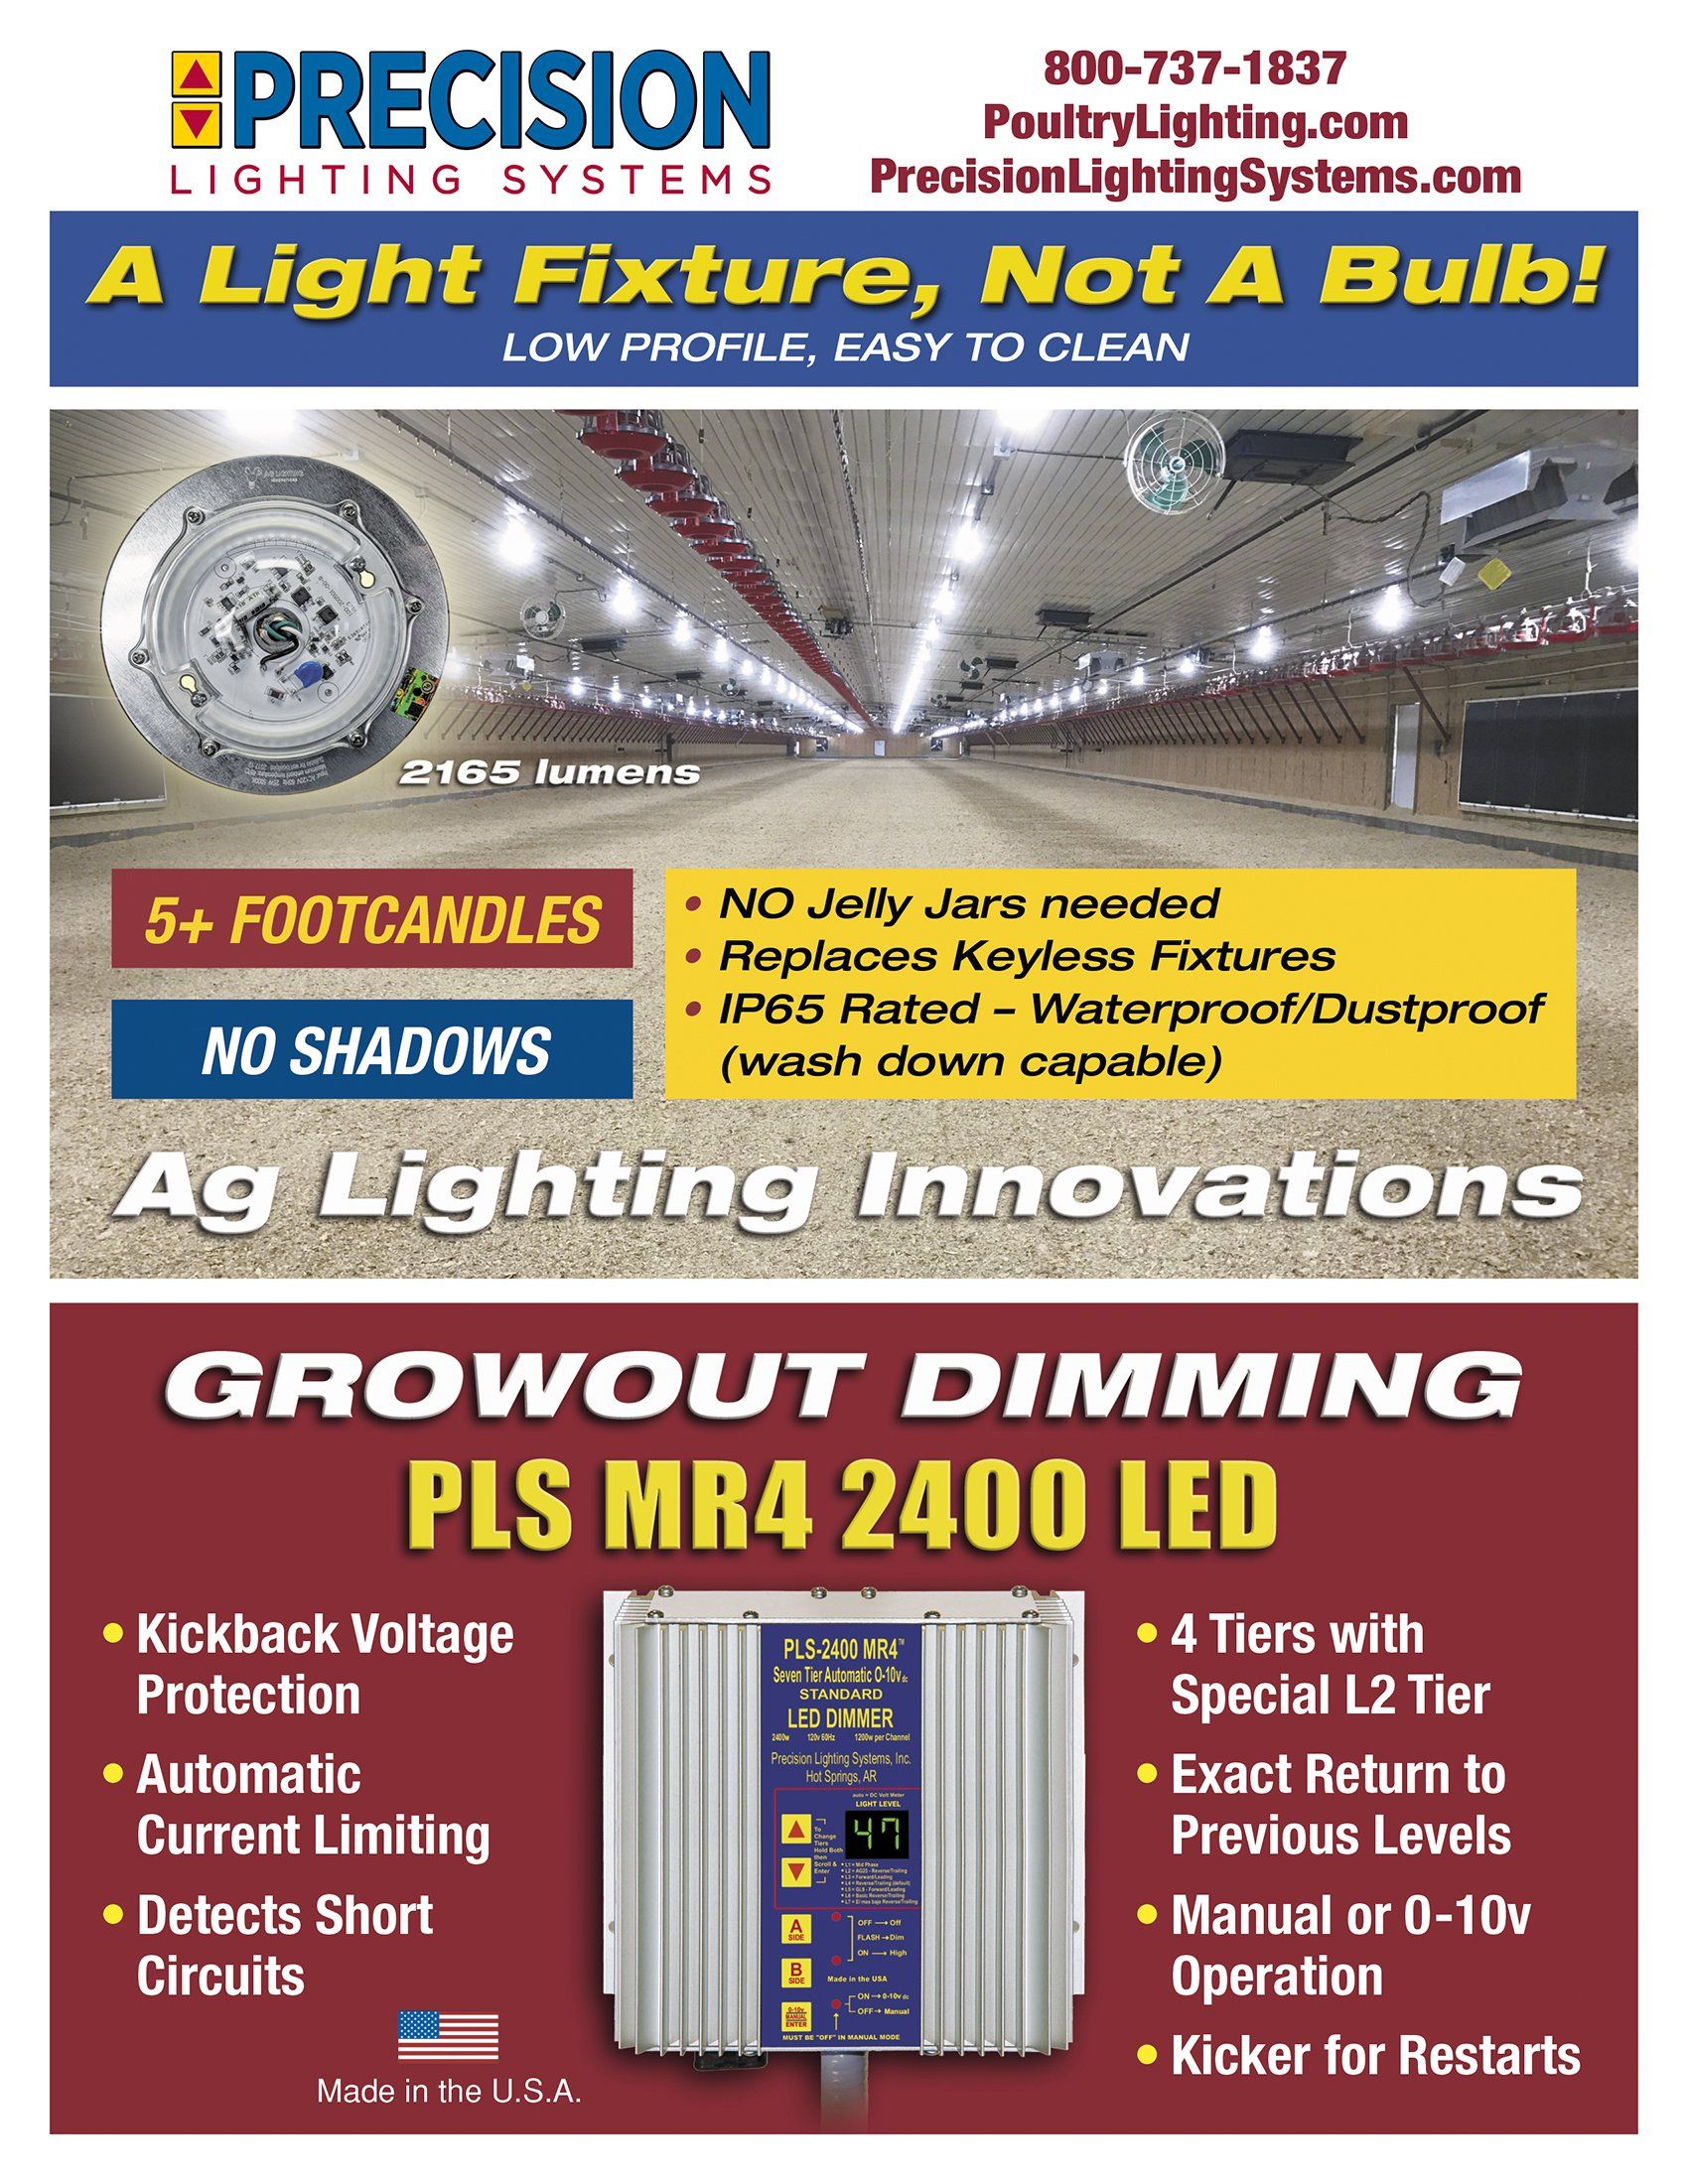 pls-2400 led dimmer product sheet | Led Lighting For Poultry Houses